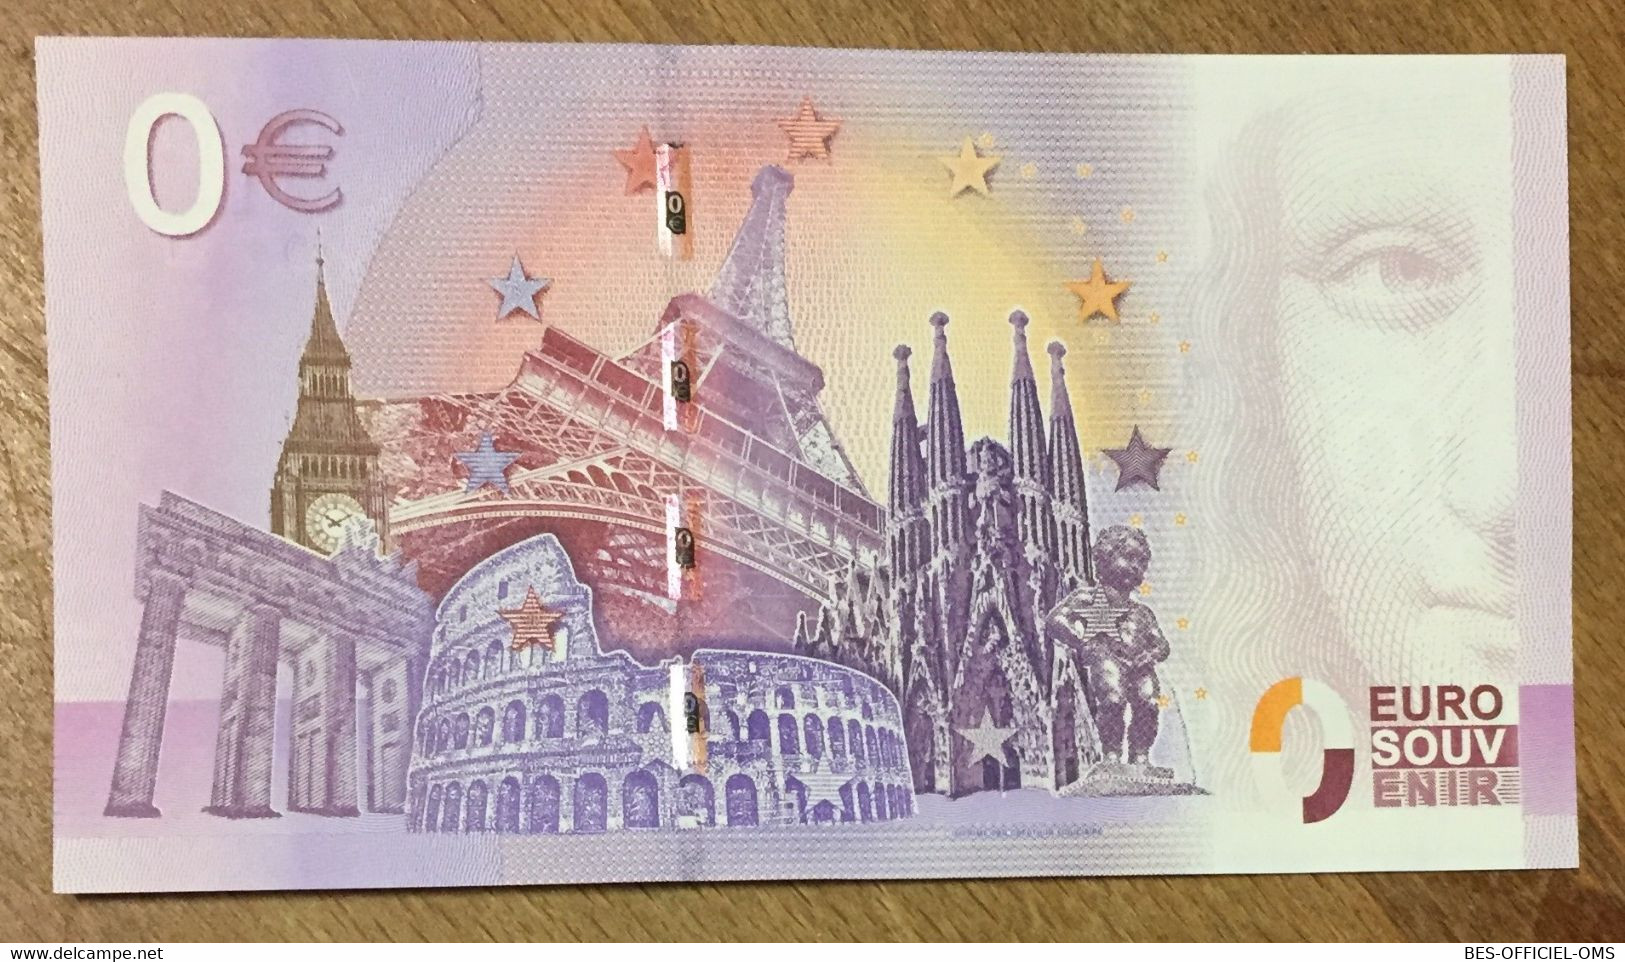 2016 BILLET 0 EURO SOUVENIR DPT 75 PARIS - LES CHAMPS ÉLYSÉES + TIMBRE ZERO 0 EURO SCHEIN BANKNOTE PAPER MONEY - Private Proofs / Unofficial